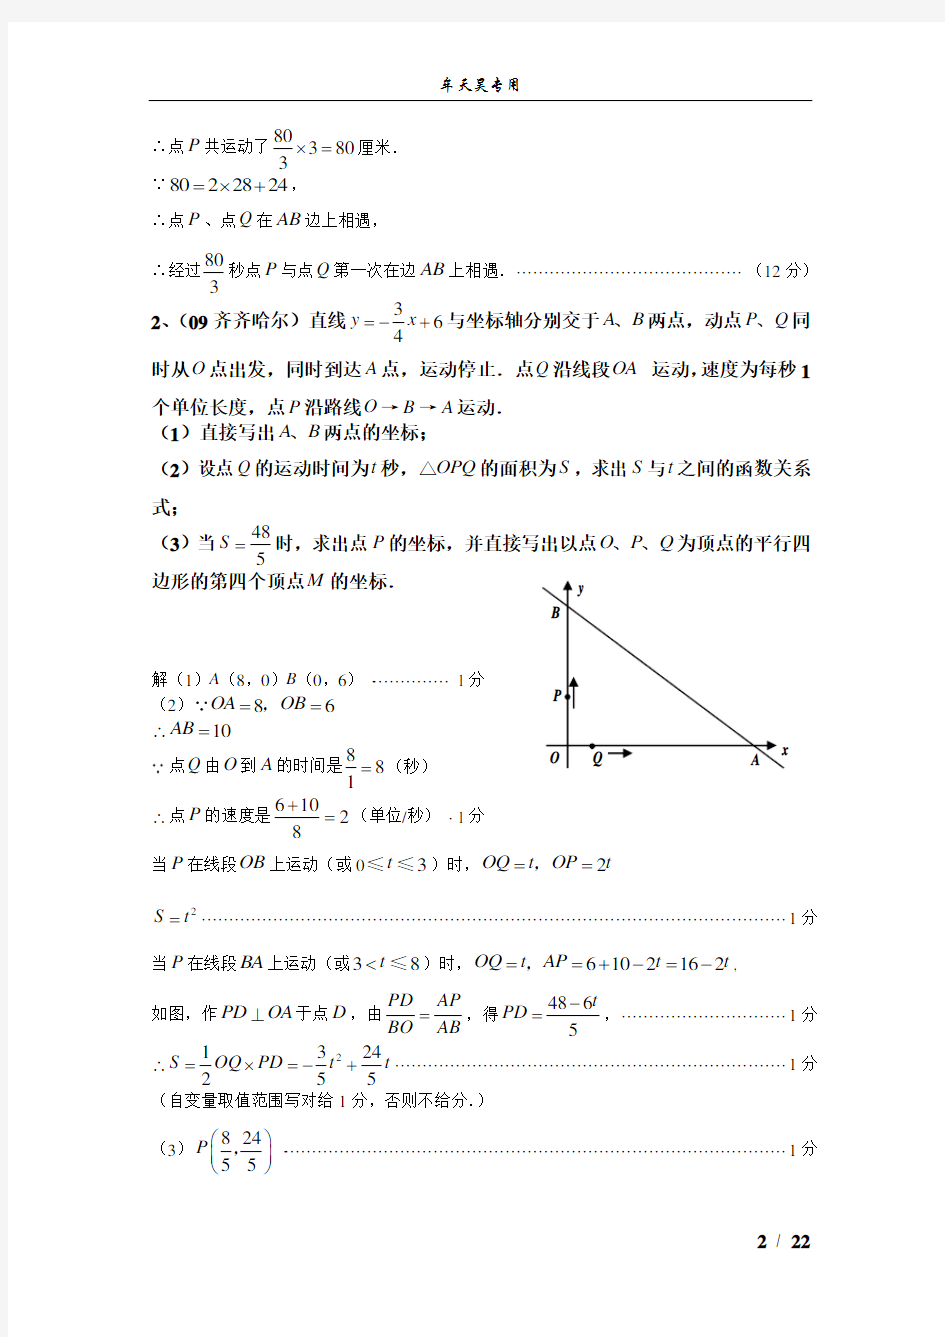 (完整)初中数学几何的动点问题专题练习